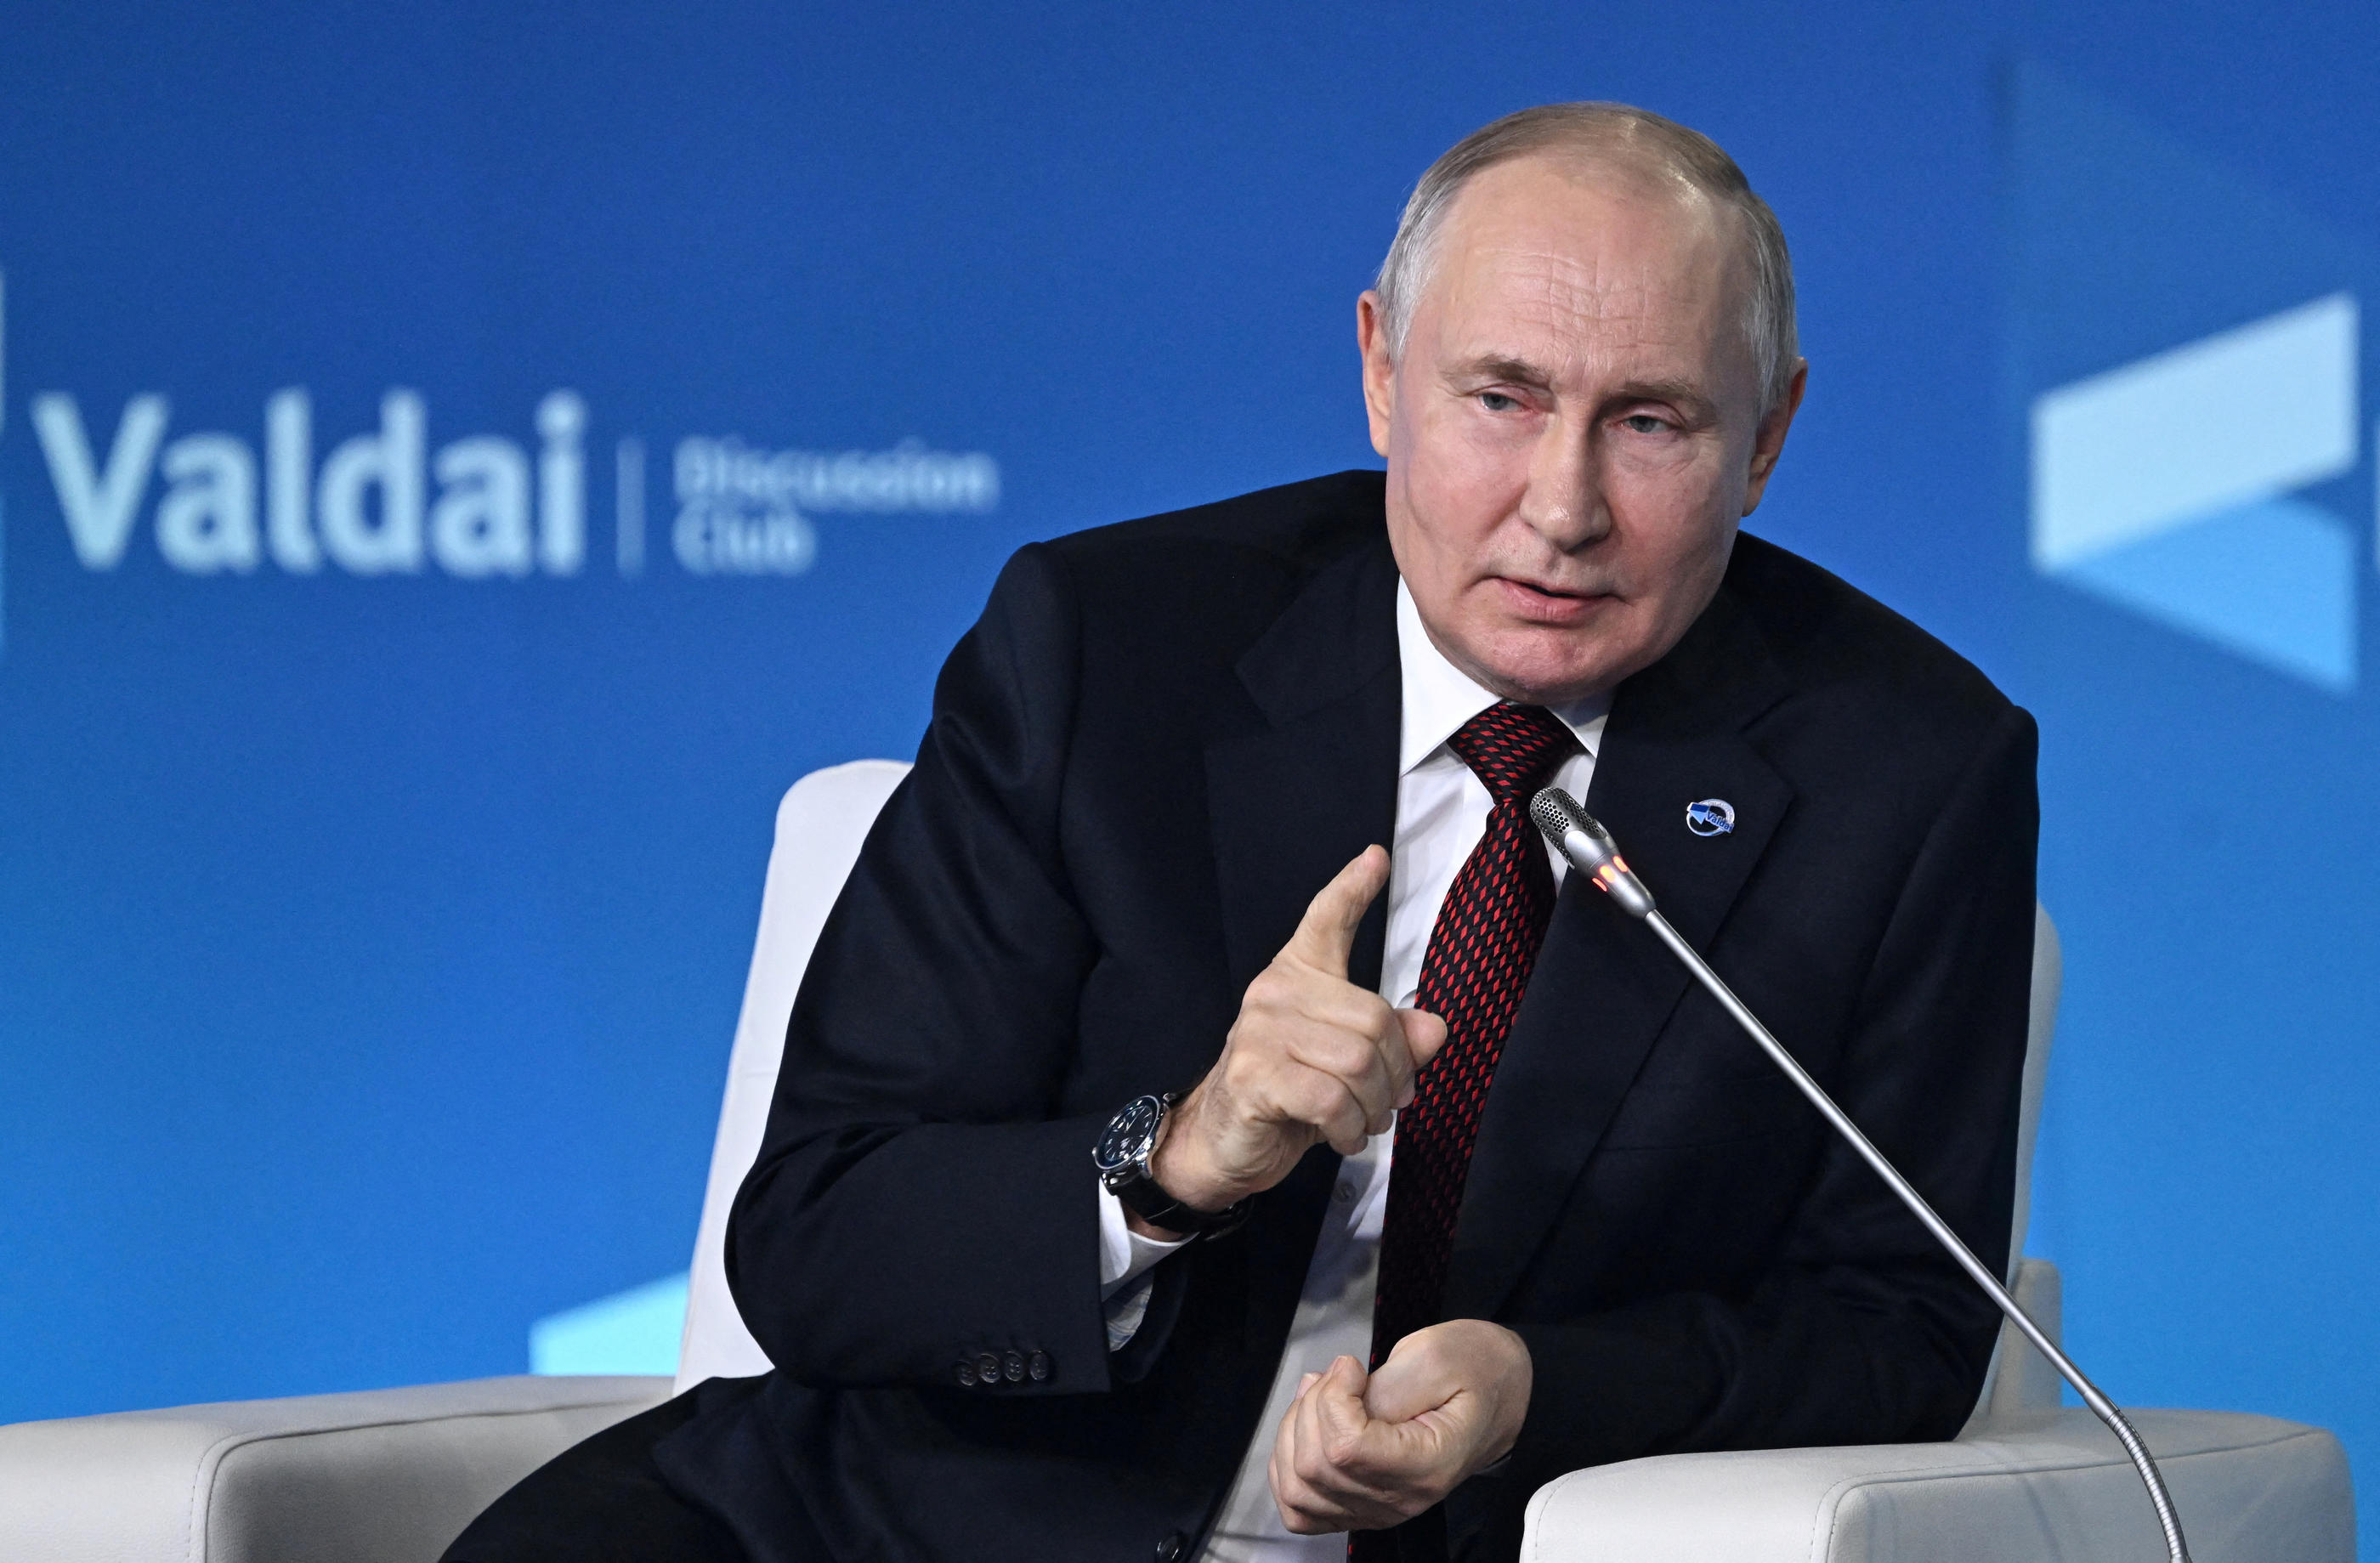 Vladimir Poutine au Poutine au forum politique de Valdaï en Russie Sputnik/Grigory Sysoyev/Pool via REUTERS. 